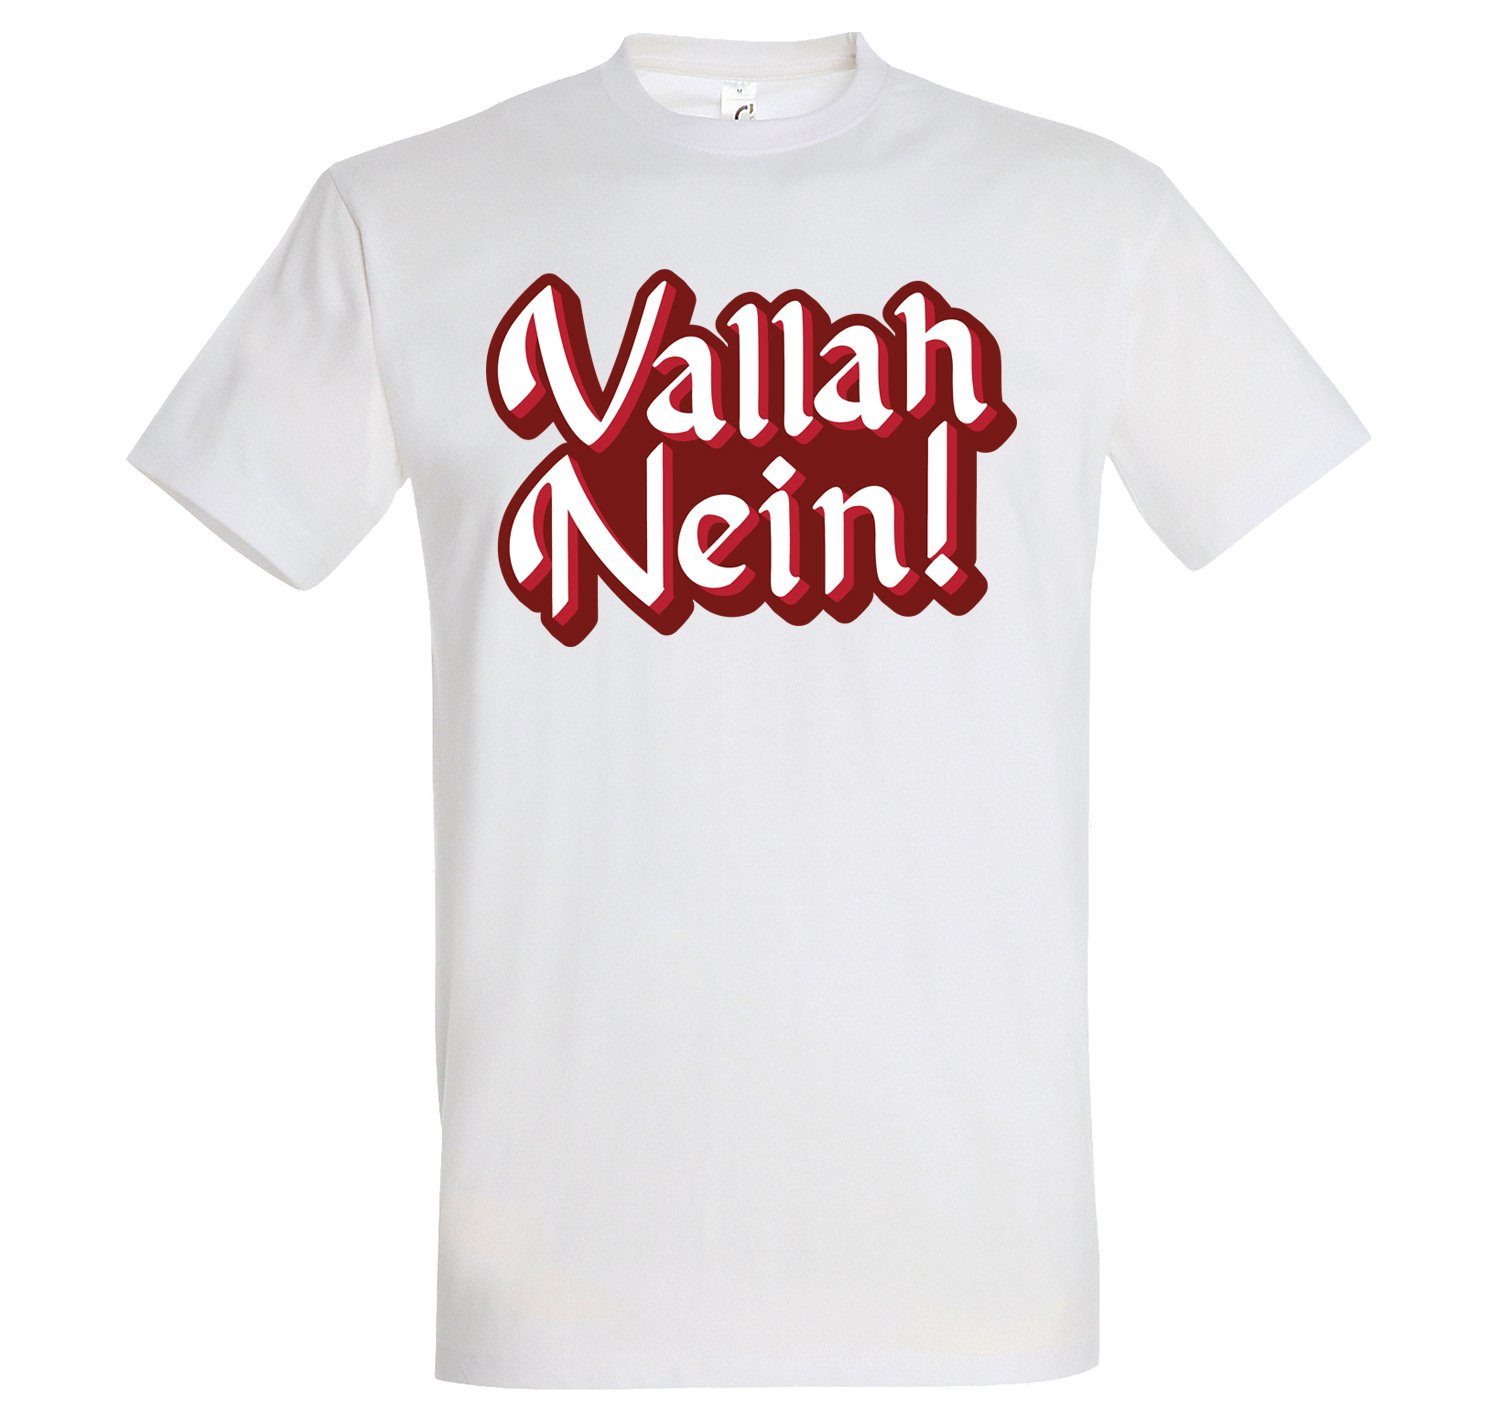 Youth Designz T-Shirt "Vallah Nein" Herren T-Shirt mit lustigem Spruch Weiß